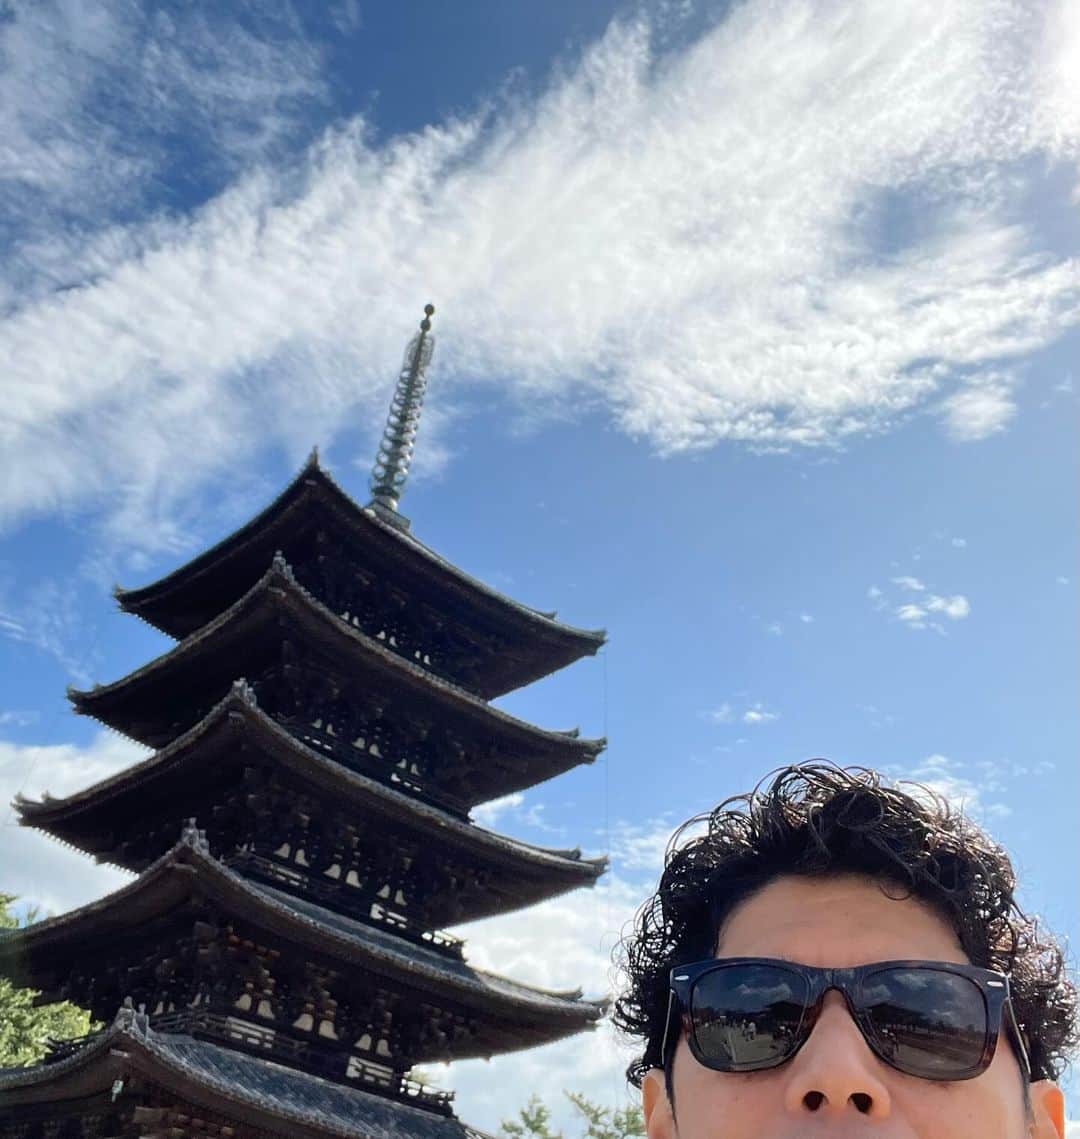 村上てつやのインスタグラム：「神戸・奈良公演ありがとうございました🎵  MCに対する突っ込みやリアクションの大きさetc関西「らしさ」を味わった二日間でした😆  また来月、関西シリーズ第二弾よろしくです  では旅のおもひでを……  ①奈良興福寺にお散歩　五重塔とパチリ  興福寺といえば、写真は（もちろん）撮れませんが国宝館に展示されているかの有名な阿修羅像に会って来ました👍 以前見た時よりも美しく感じて見惚れた😳  ②ドアップ失礼します😵‍💫 近鉄奈良駅前にある行基像と！ 宗教家でありながら橋を架けたり開墾を指導したり現実社会の改良者として活躍した行基さん大尊敬🙇‍♂️  ③神戸市役所近くには「ボウリング発祥の地」記念碑が🎳　江戸時代には長崎などにボウリング場はあったが駐留している外国人用で、日本人が初めてプレーしたのが神戸だとのこと…… へぇー🤔  ④市民ランナーの端くれとして嬉しかったのが「日本マラソン発祥の地」モニュメント  1909年ここ神戸から大阪までの競走大会が行われた際に日本で初めてマラソンという言葉が使われたそう😲ちなみにここも神戸市役所の目の前！  ⑤ていうか神戸市役所周りは銅像やモニュメントが沢山ありすぎ🤣  インパクト大賞は「老人像」  筋骨隆々たる老人像は日本がギラギラしていた時代を彷彿とさせるな😱  自撮りマニアからは以上です  押忍😎  #ゴスペラーズ坂ツアー2023 #ヒアナウ  #奈良　 #興福寺 #興福寺五重塔 #近鉄奈良駅 #行基像 #行基 #ボウリング発祥の地 #日本マラソン発祥の地 #老人像」